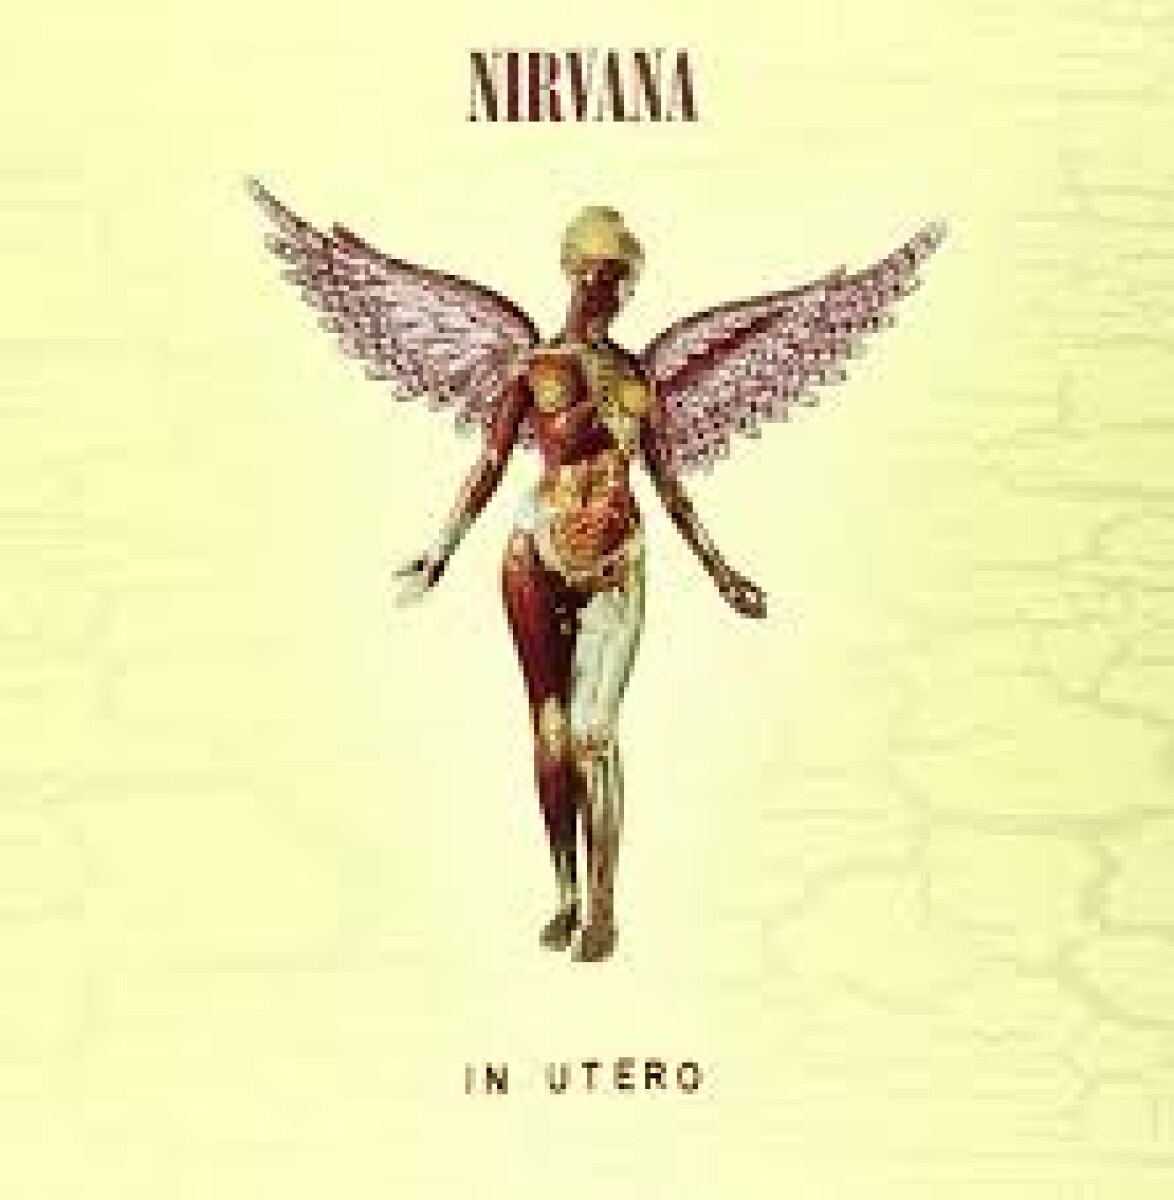 Nirvana - In Utero - Cd 